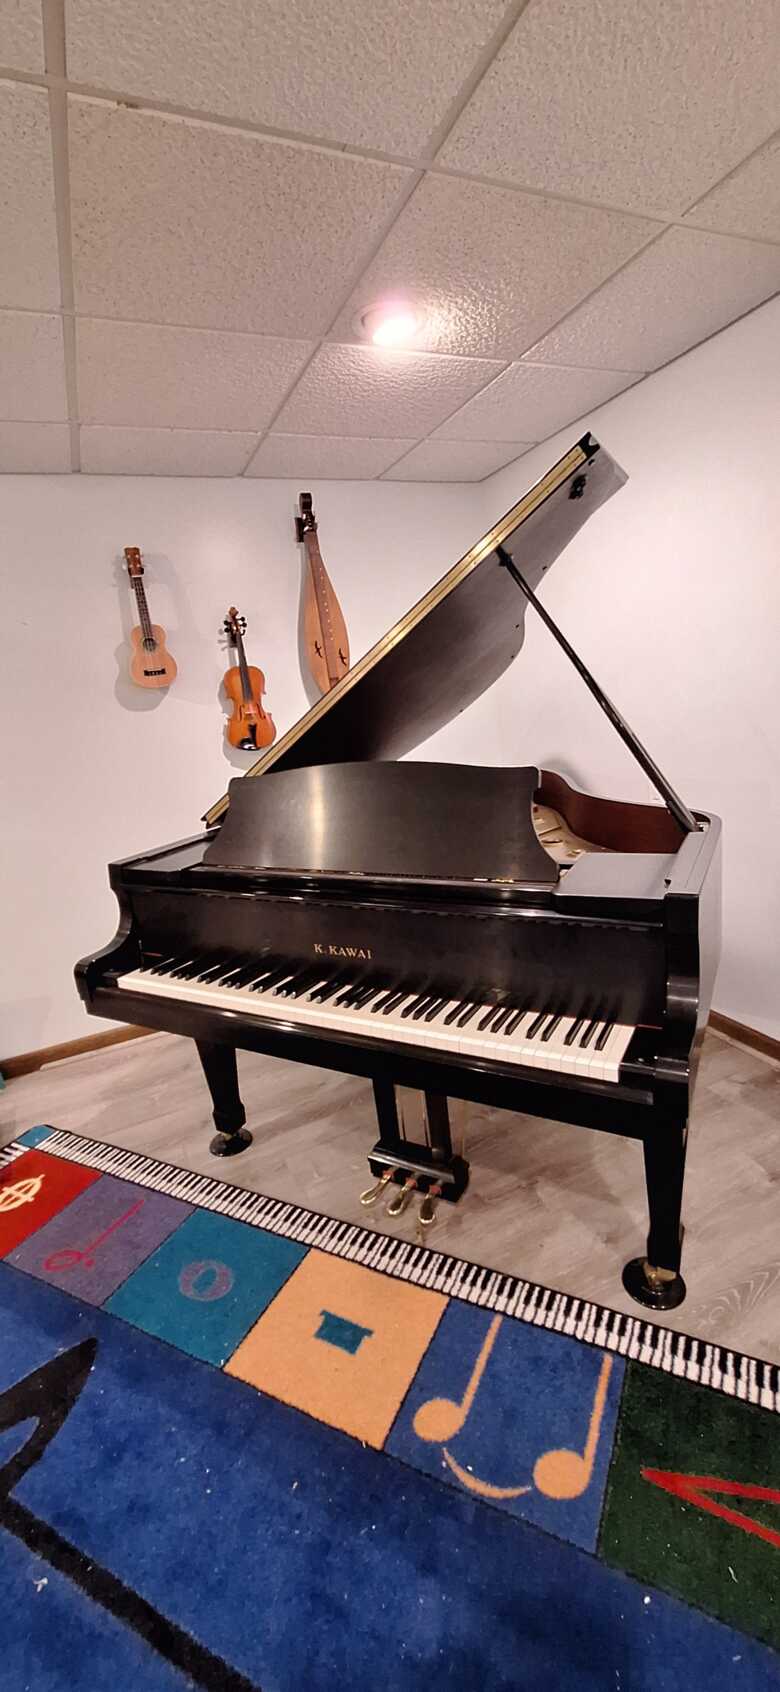 K. Kawai RX-2 Grand Piano